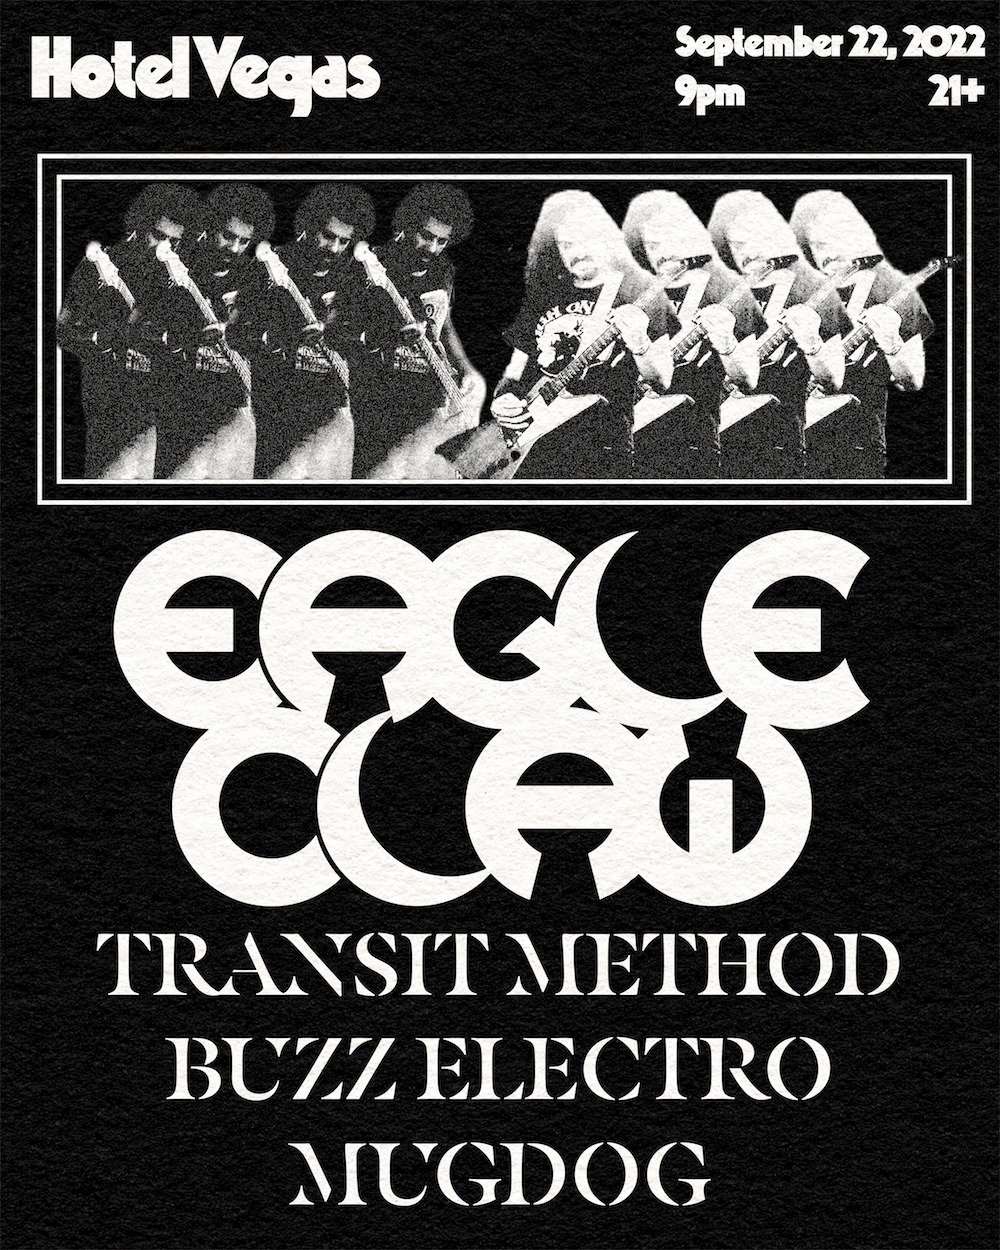 Eagle Claw, Transit Method, Buzz Electro, MugDog